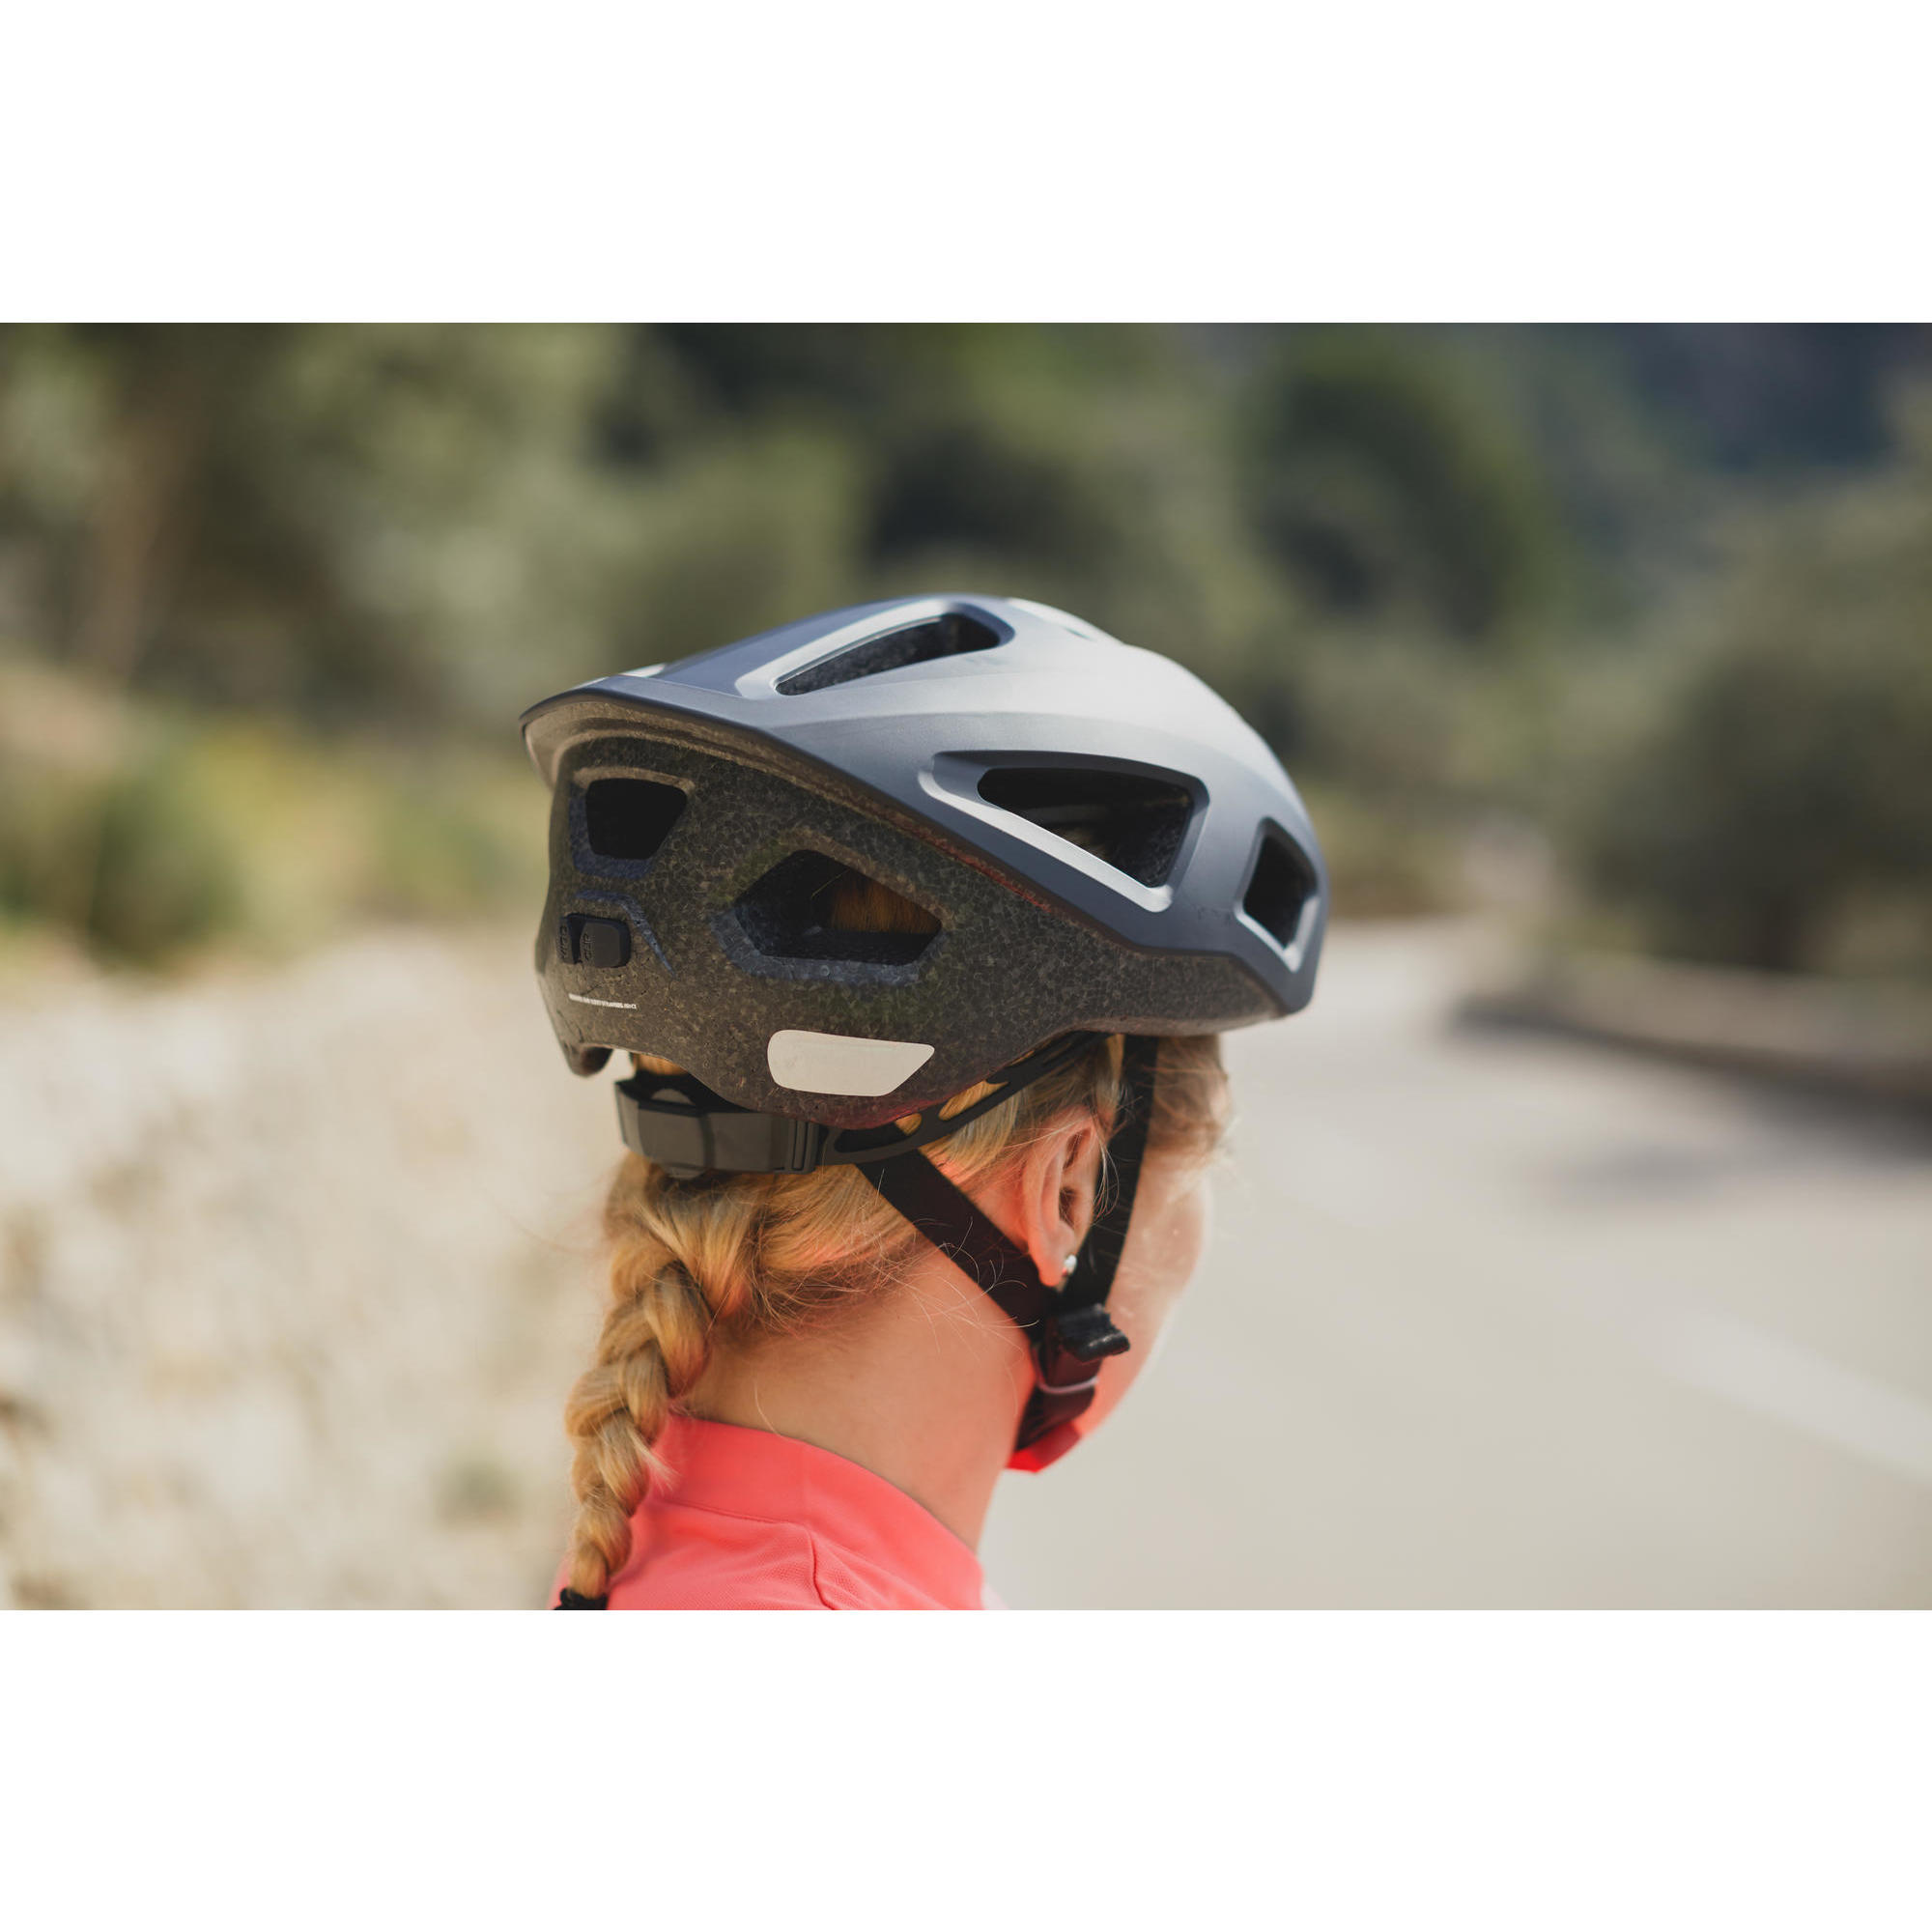 van rysel roadr 100 cycling helmet